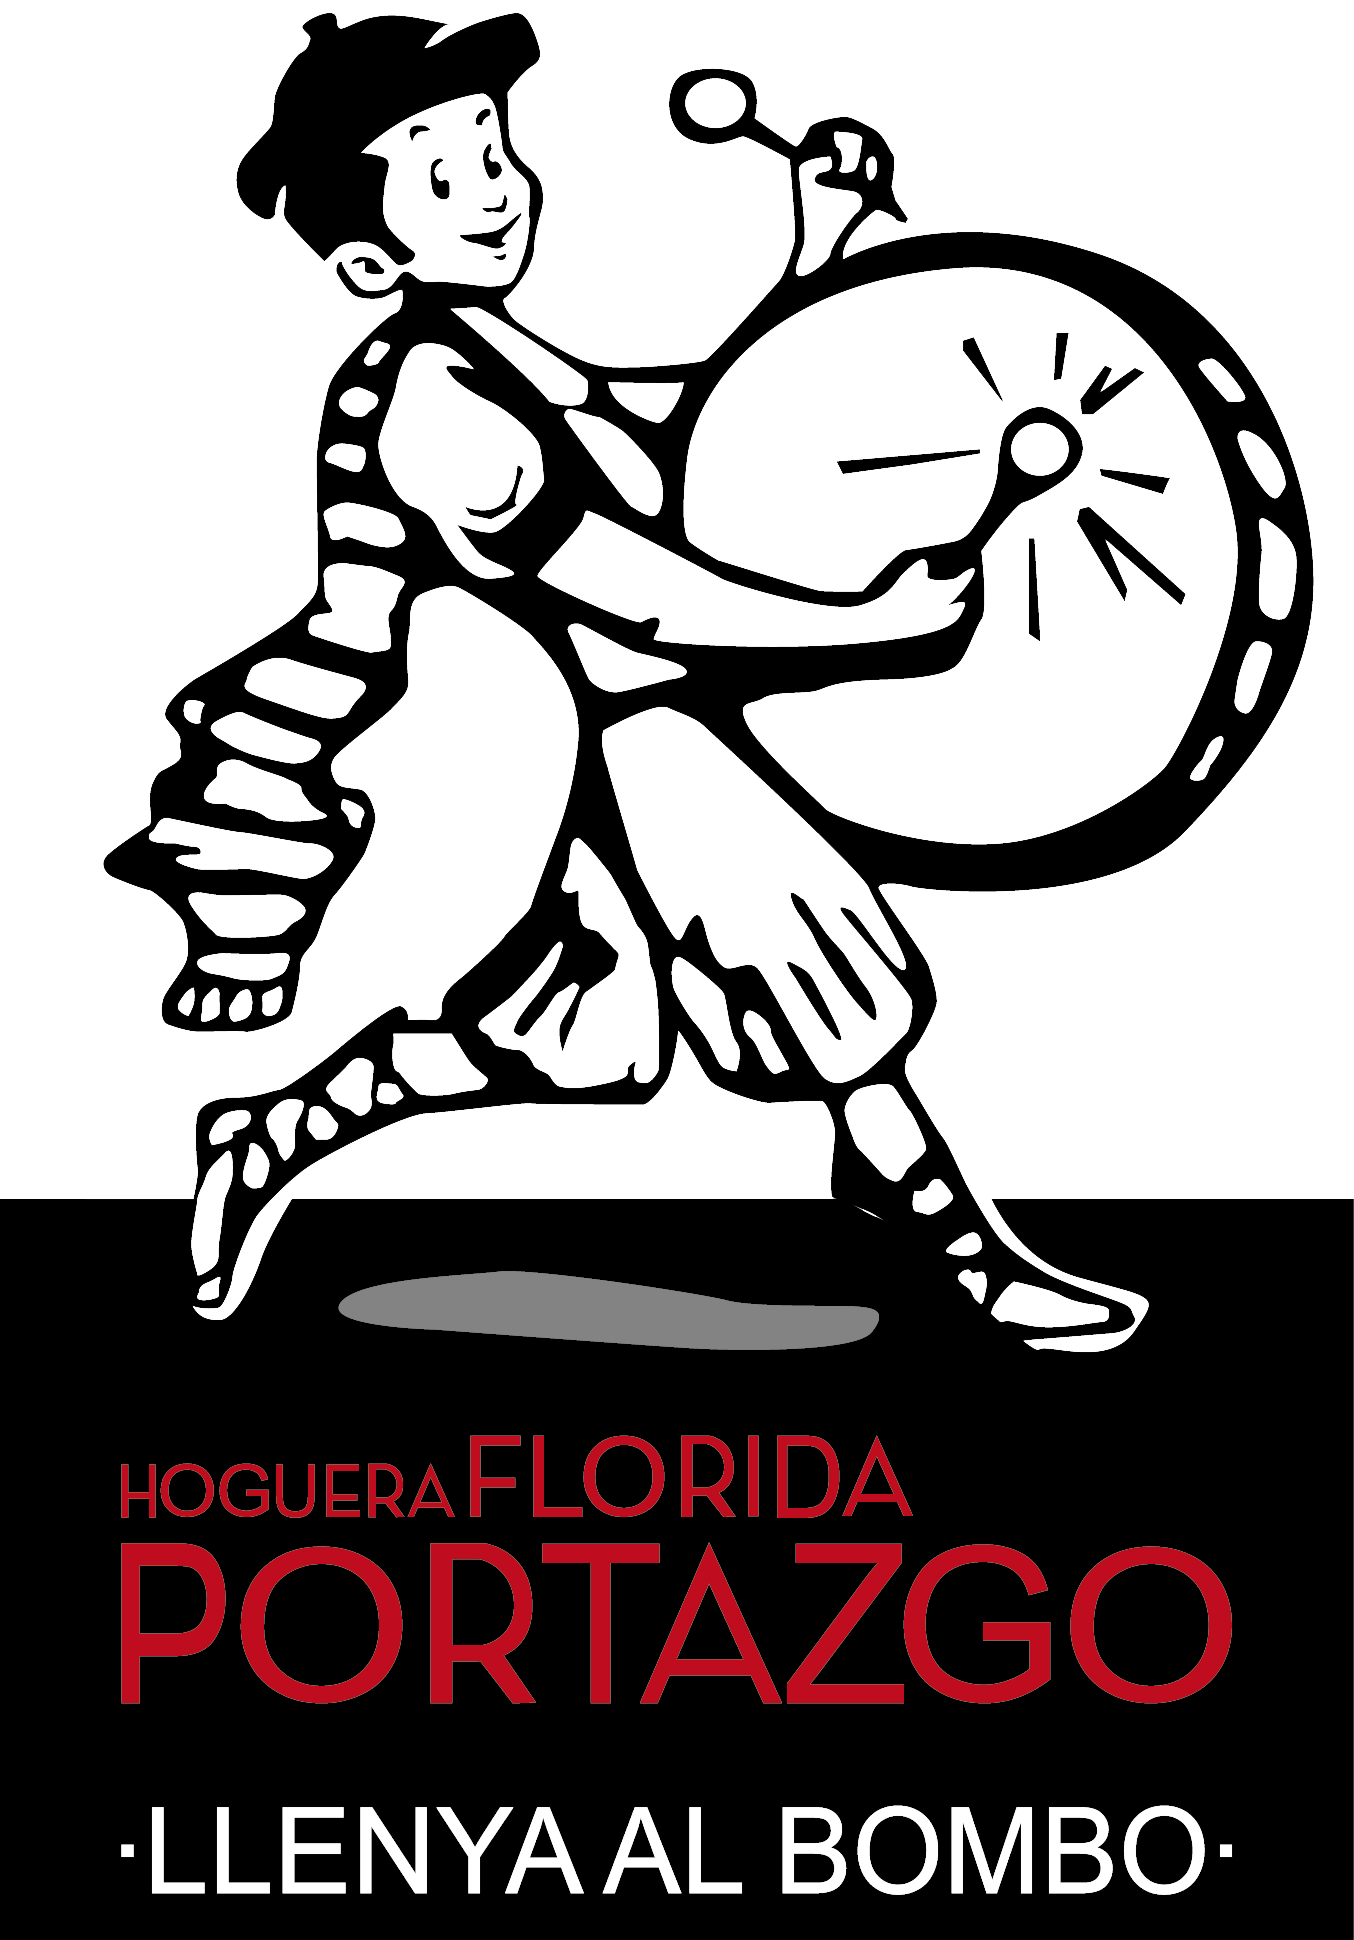 Foguera Florida Portazgo